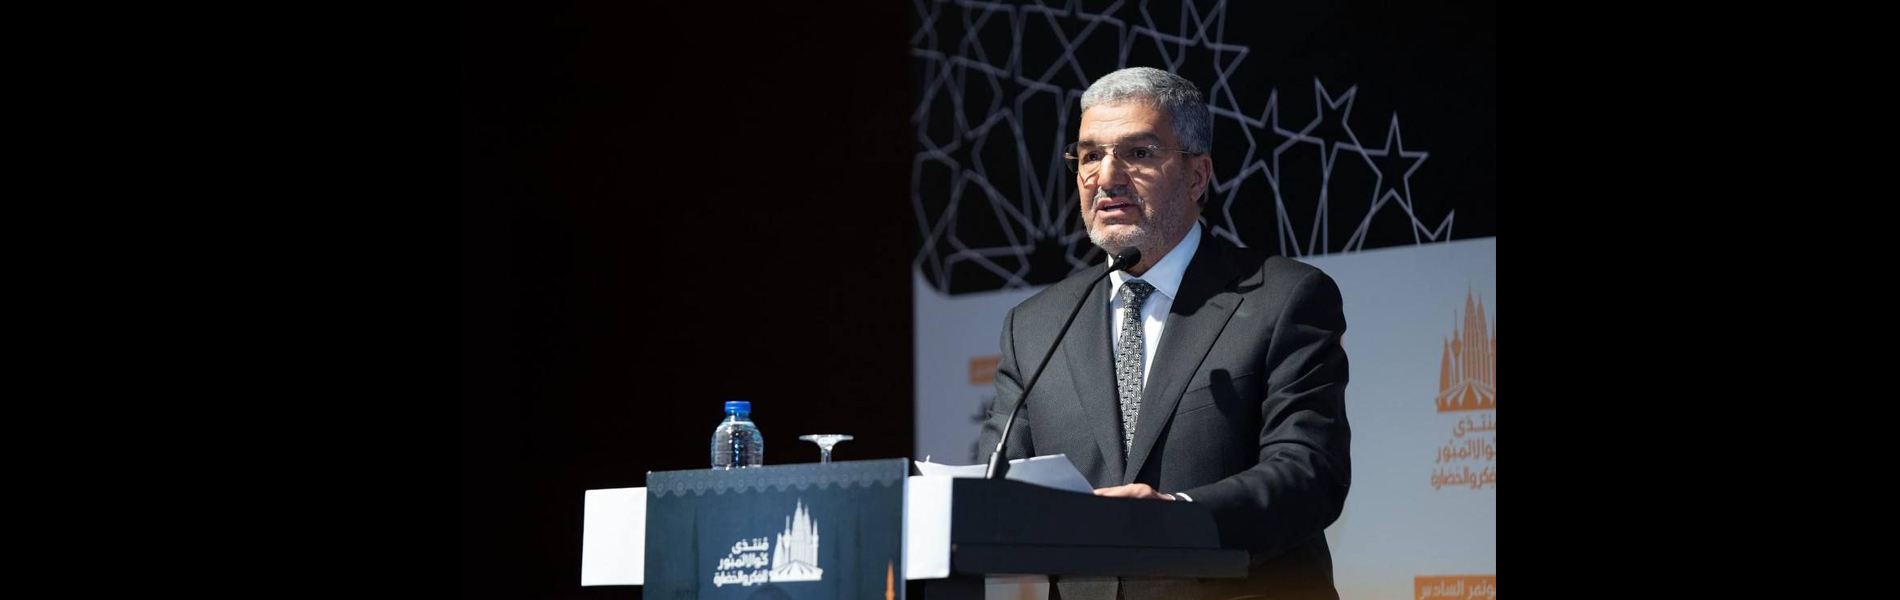 الأمين العام للحزب الإسلامي العراقي يشارك في المؤتمر السنوي السادس لمنتدى كوالالمبور للفكر والحضارة